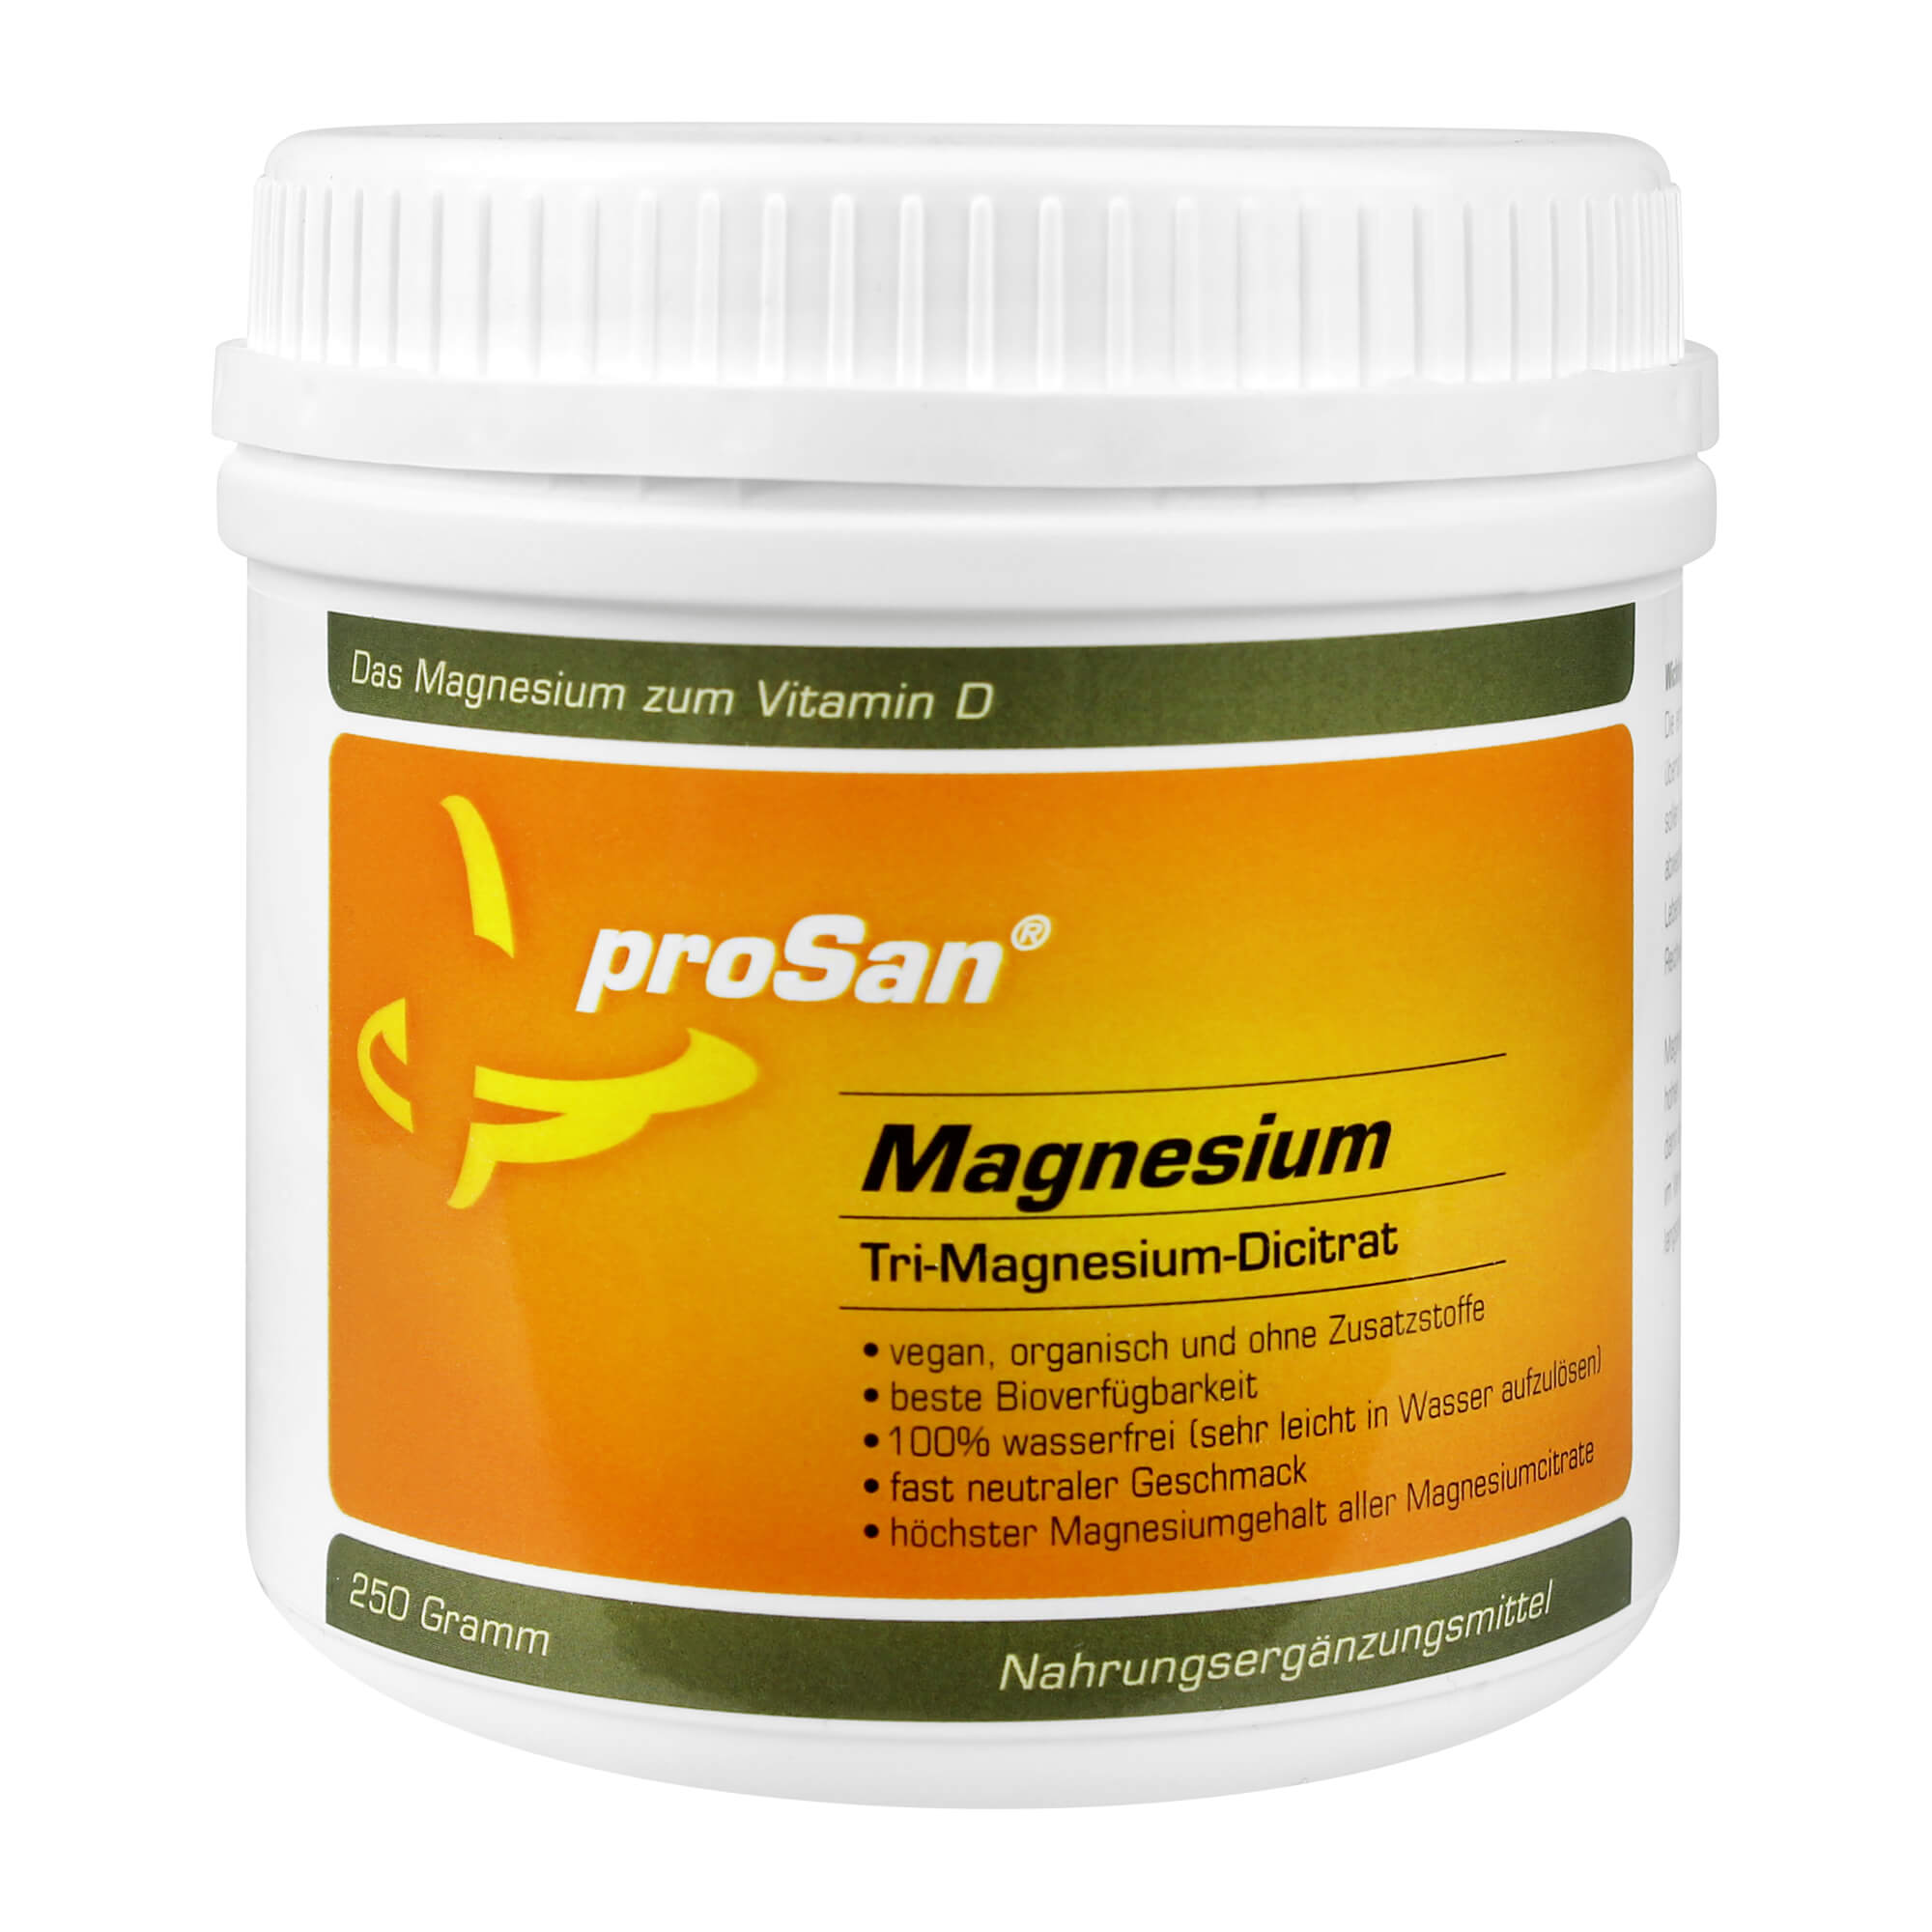 Veganes Magnesiumpulver mit Vitamin D.